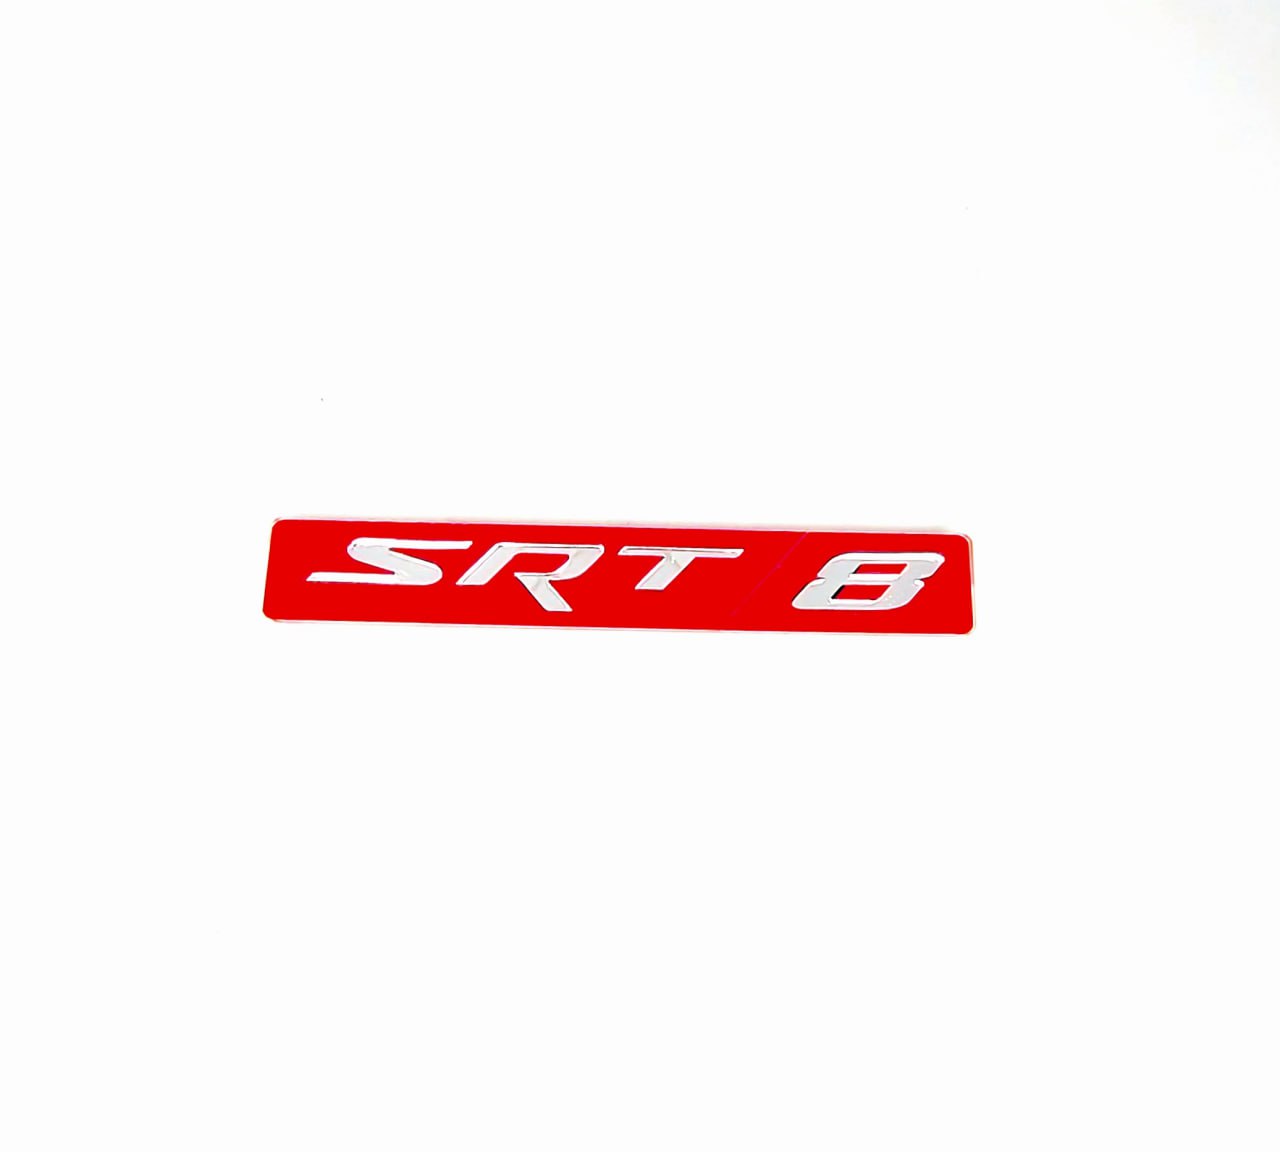 DODGE Radiator grille emblem with SRT8 logo (Type 3)